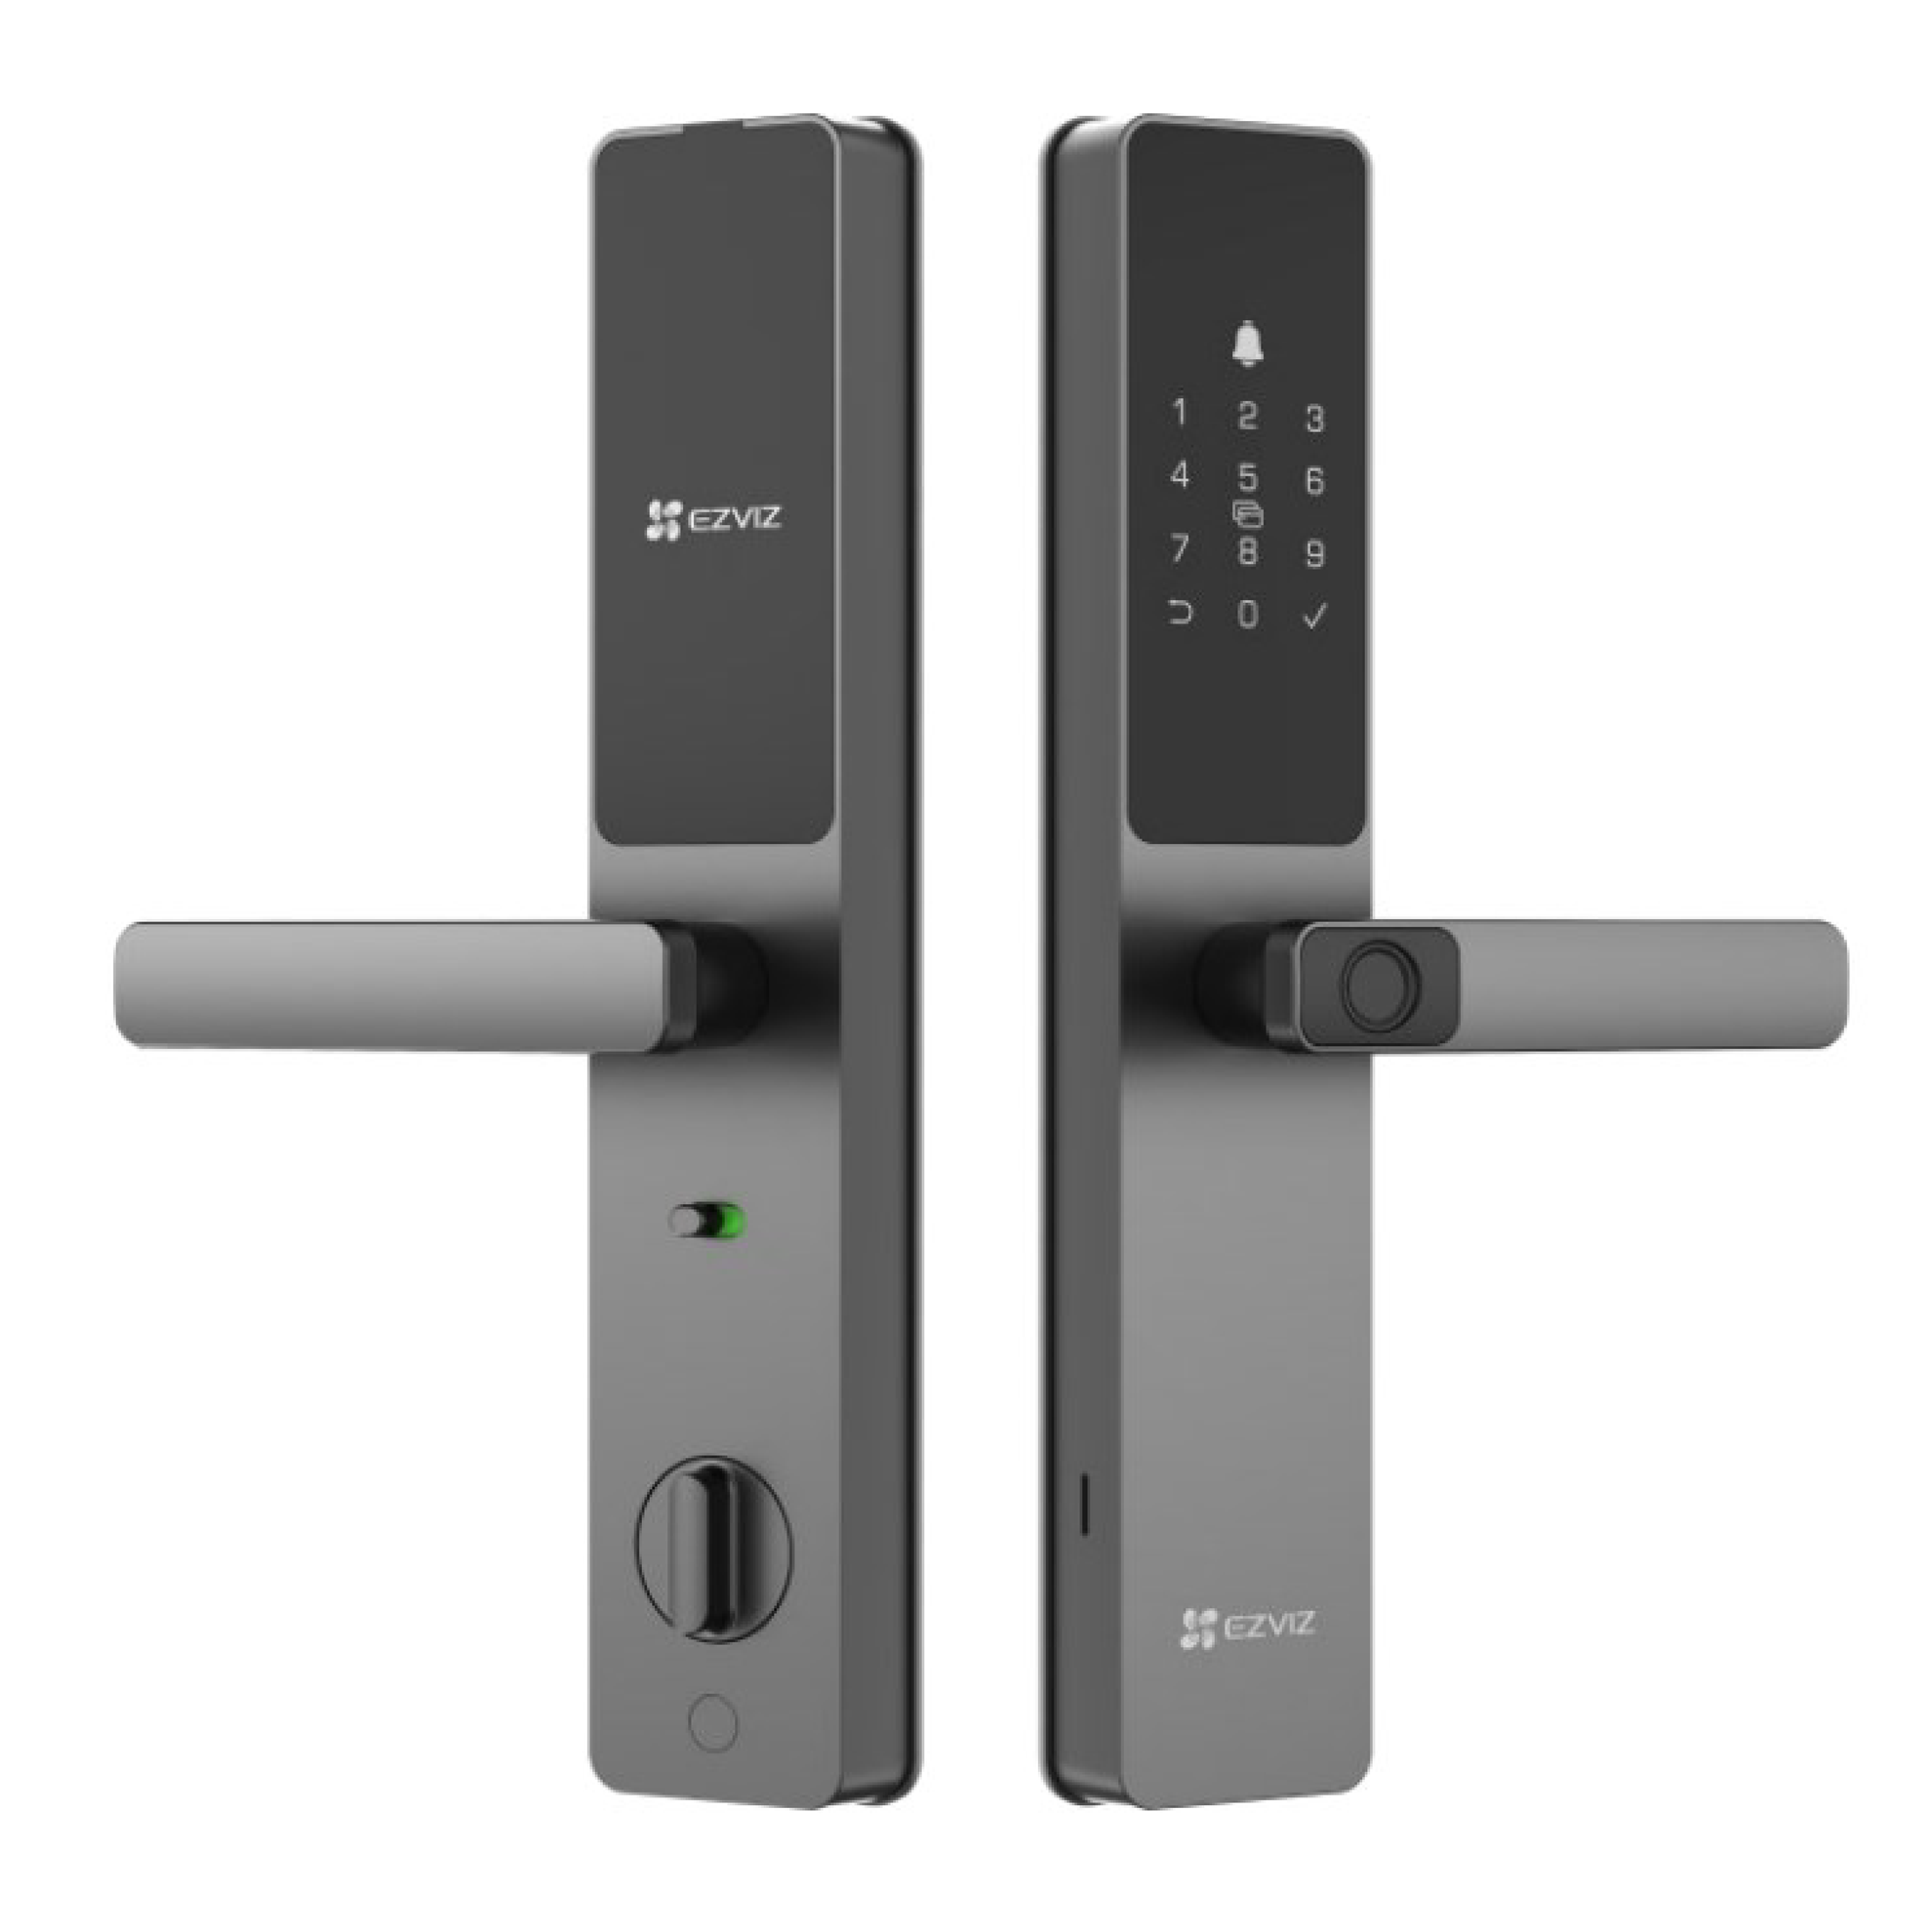 EZVIZ Smart Fingerprint Door Lock with Real-Time Mobile Alerts